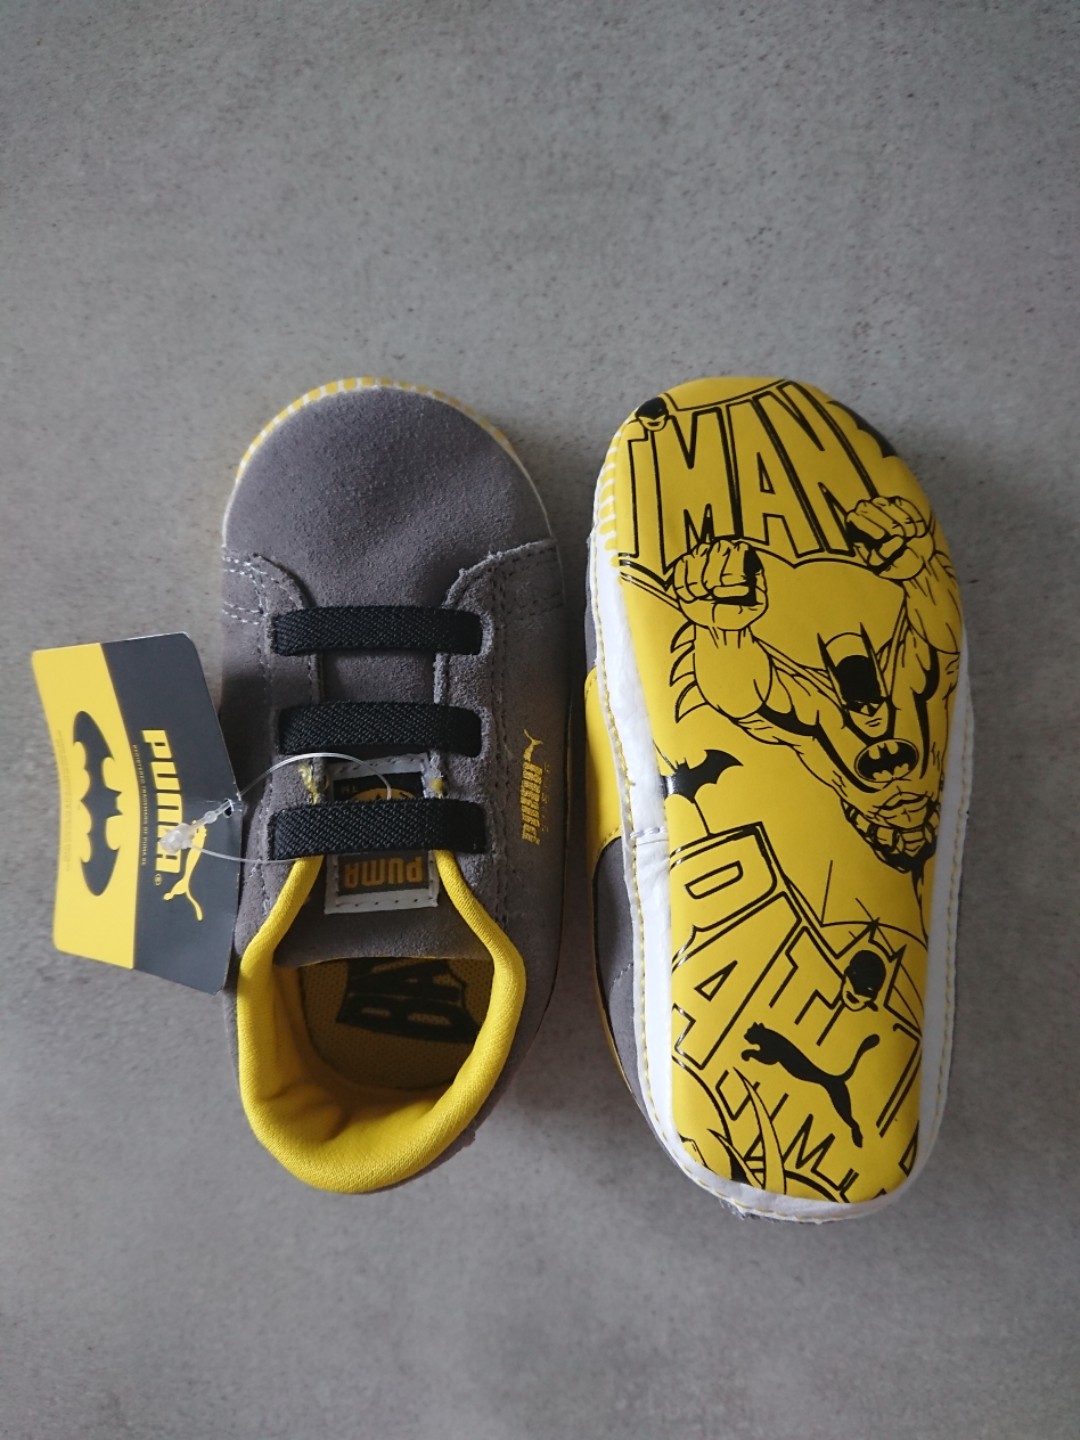 batman baby shoes